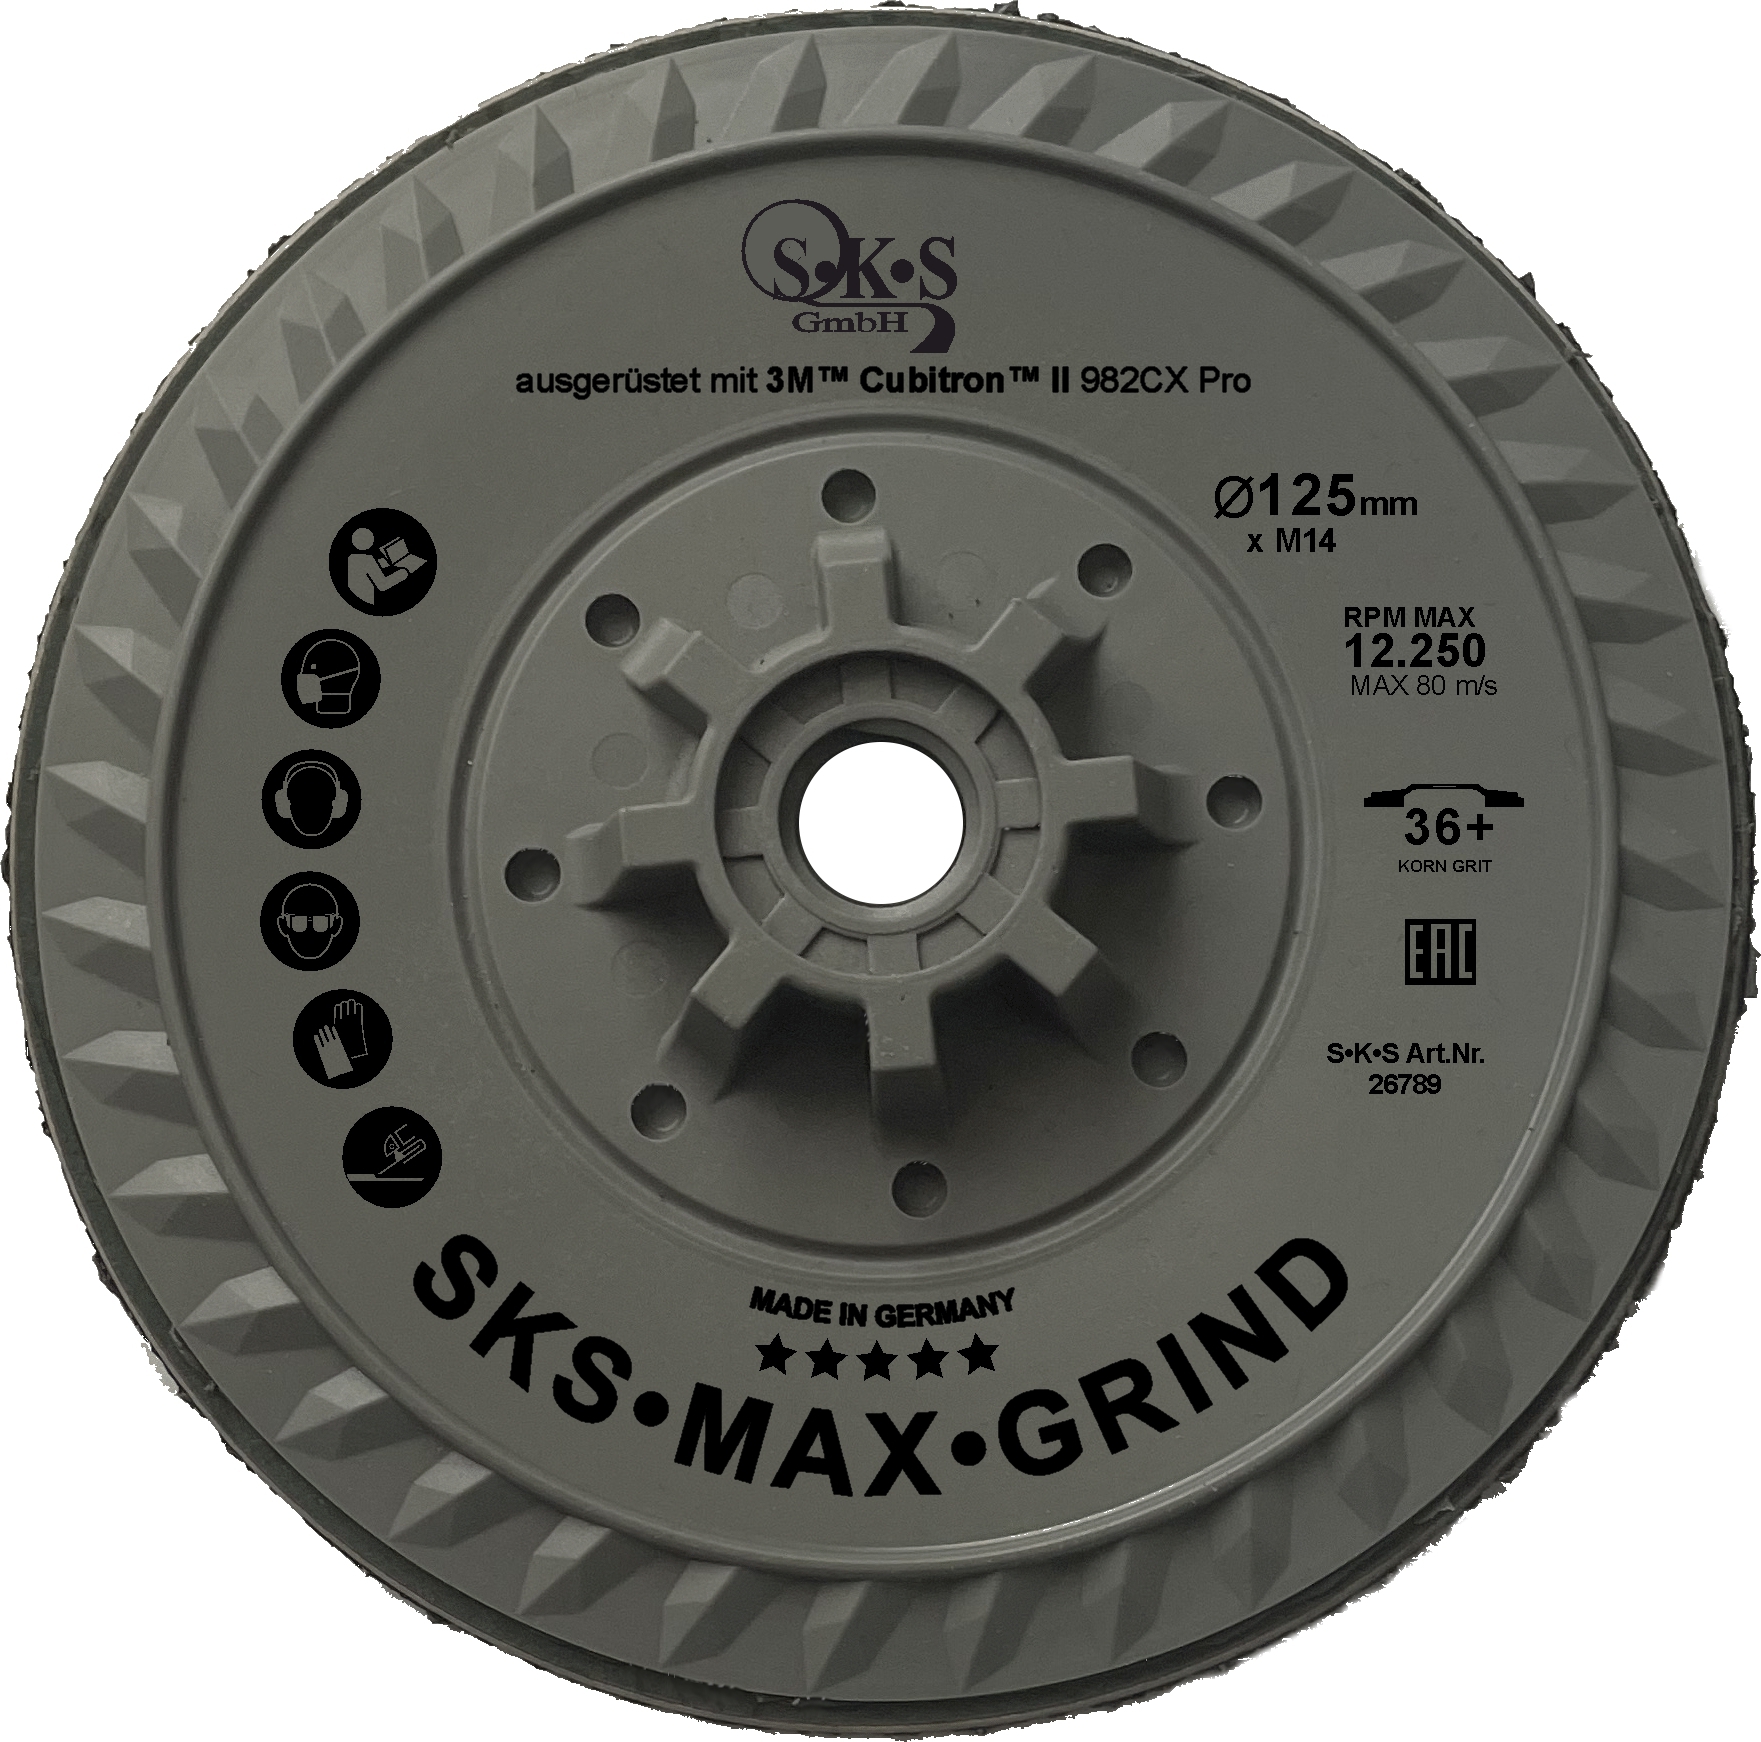 S-K-S Max Grind, 3M Cubitron II Vezelschijf 982CX Pro, 125 mm, korrelgrootte 36+, met M14 schroefdraadbevestiging